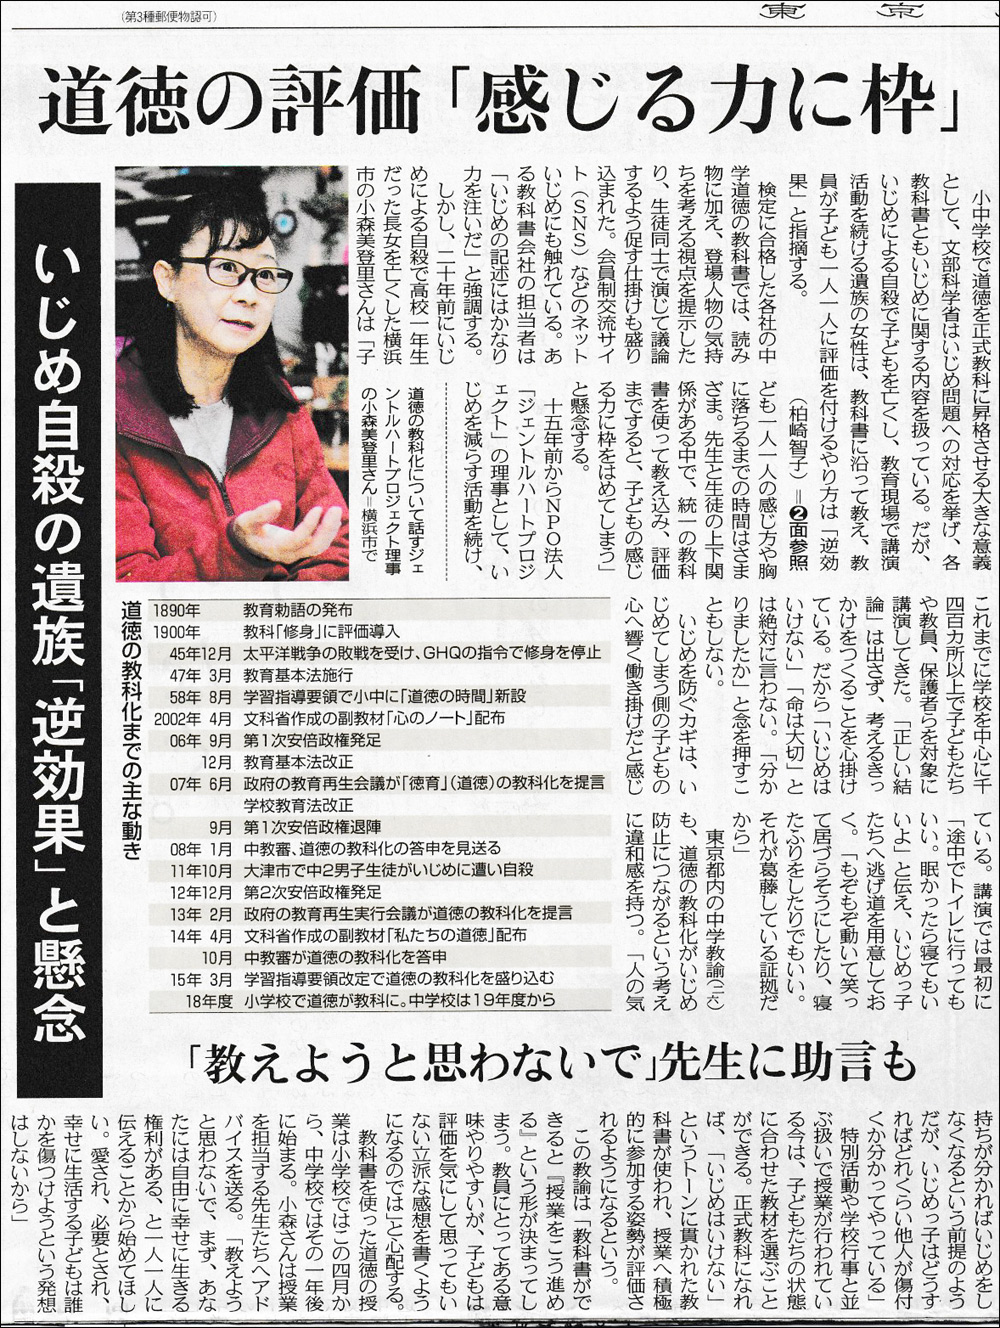 小森美登里：東京新聞掲載「道徳の評価『感じる力に枠』 いじめ自殺の遺族『逆効果』と懸念」